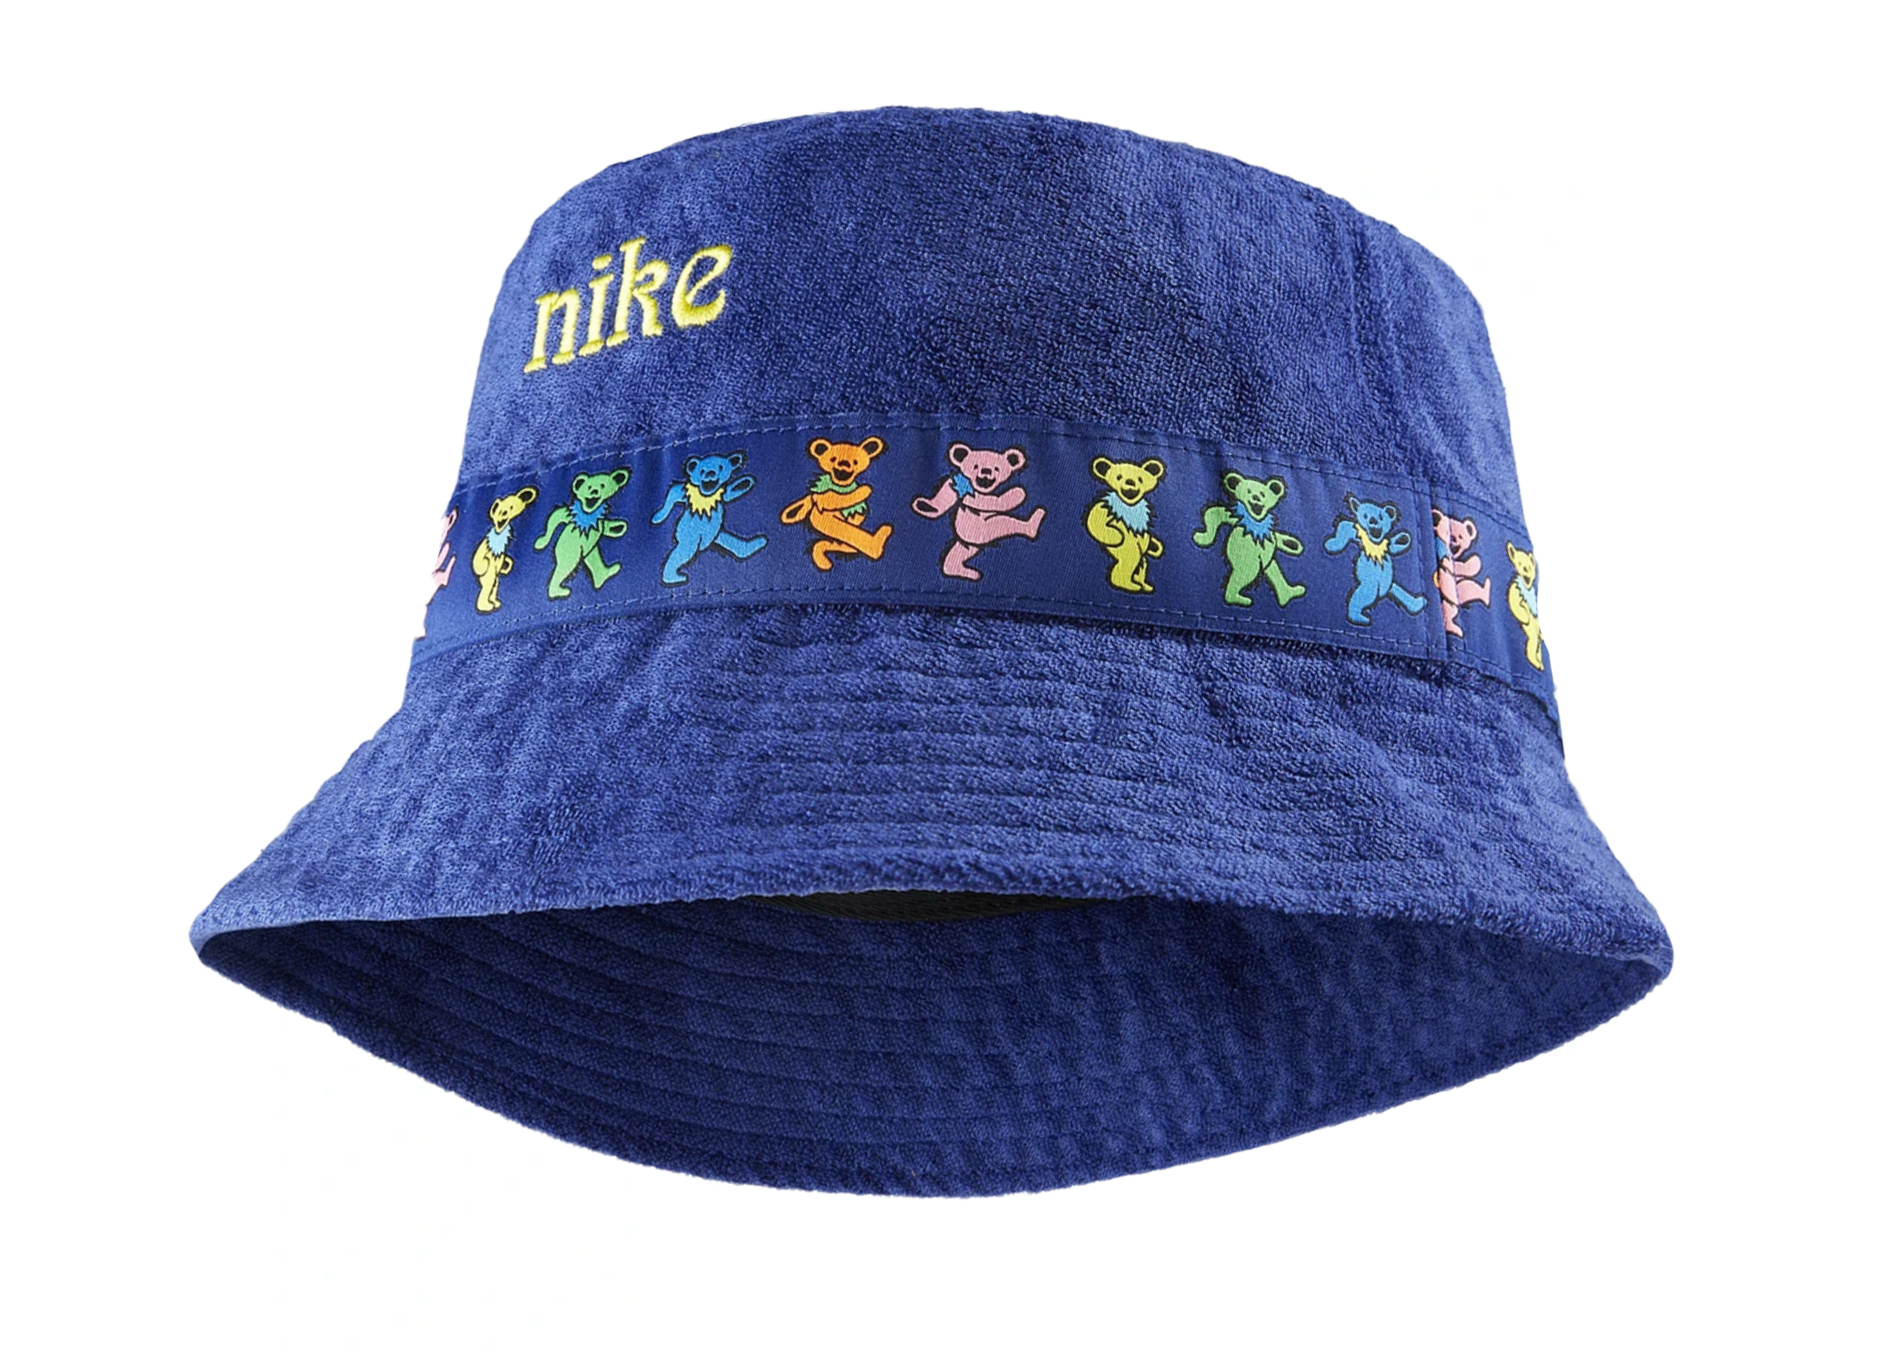 Nike x Grateful Dead Bucket Hat Blue 